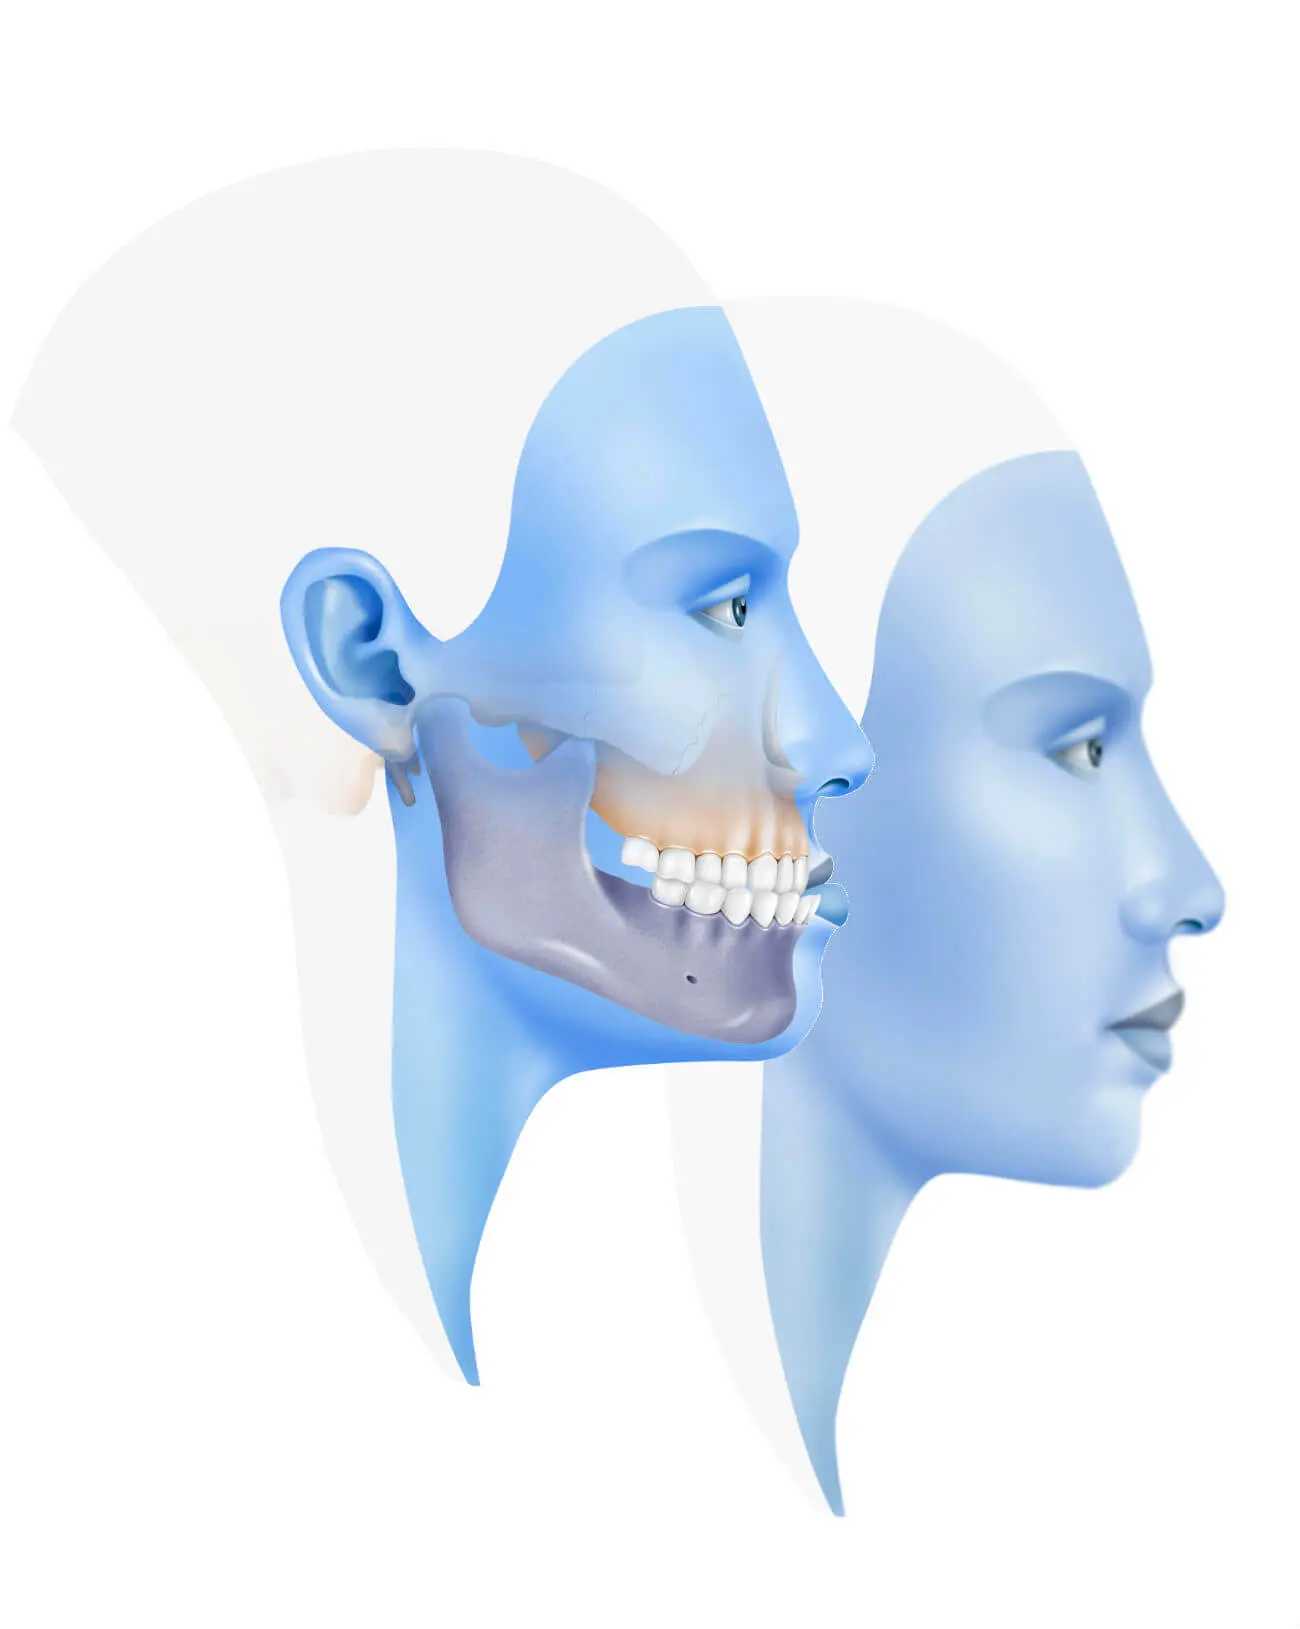 ortodoncia clase 3 - Qué hacer con una mordida clase 3